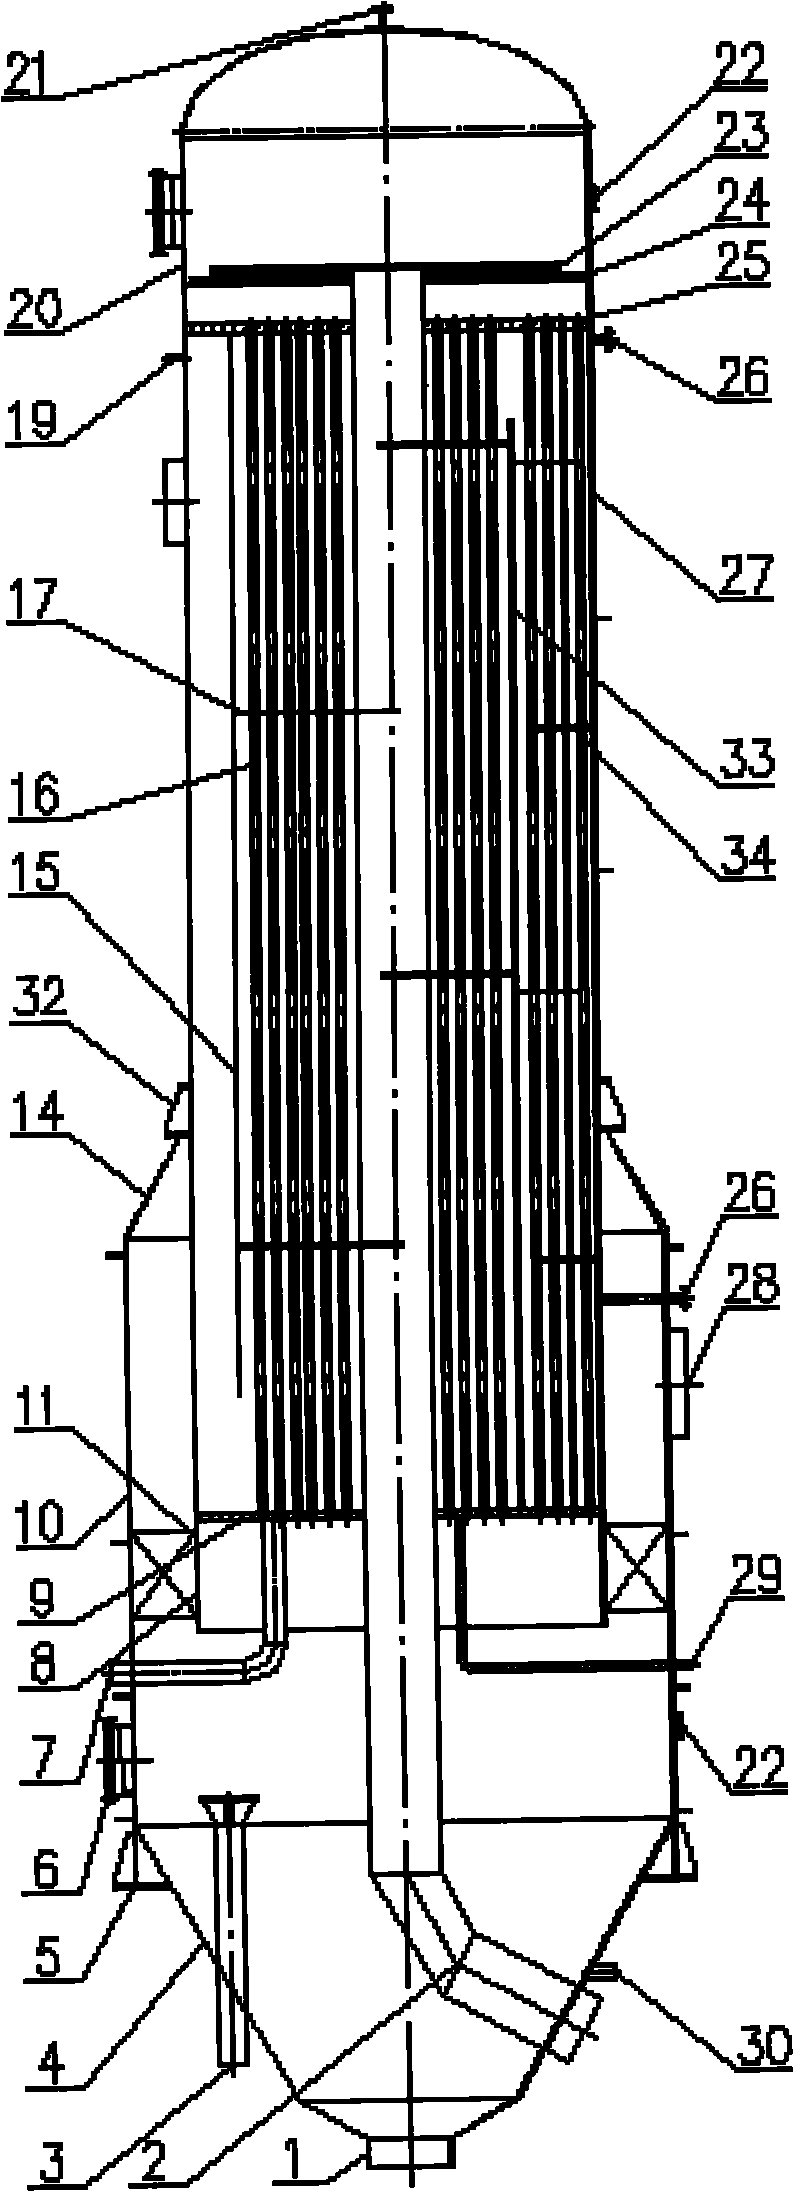 Tubular falling film evaporator